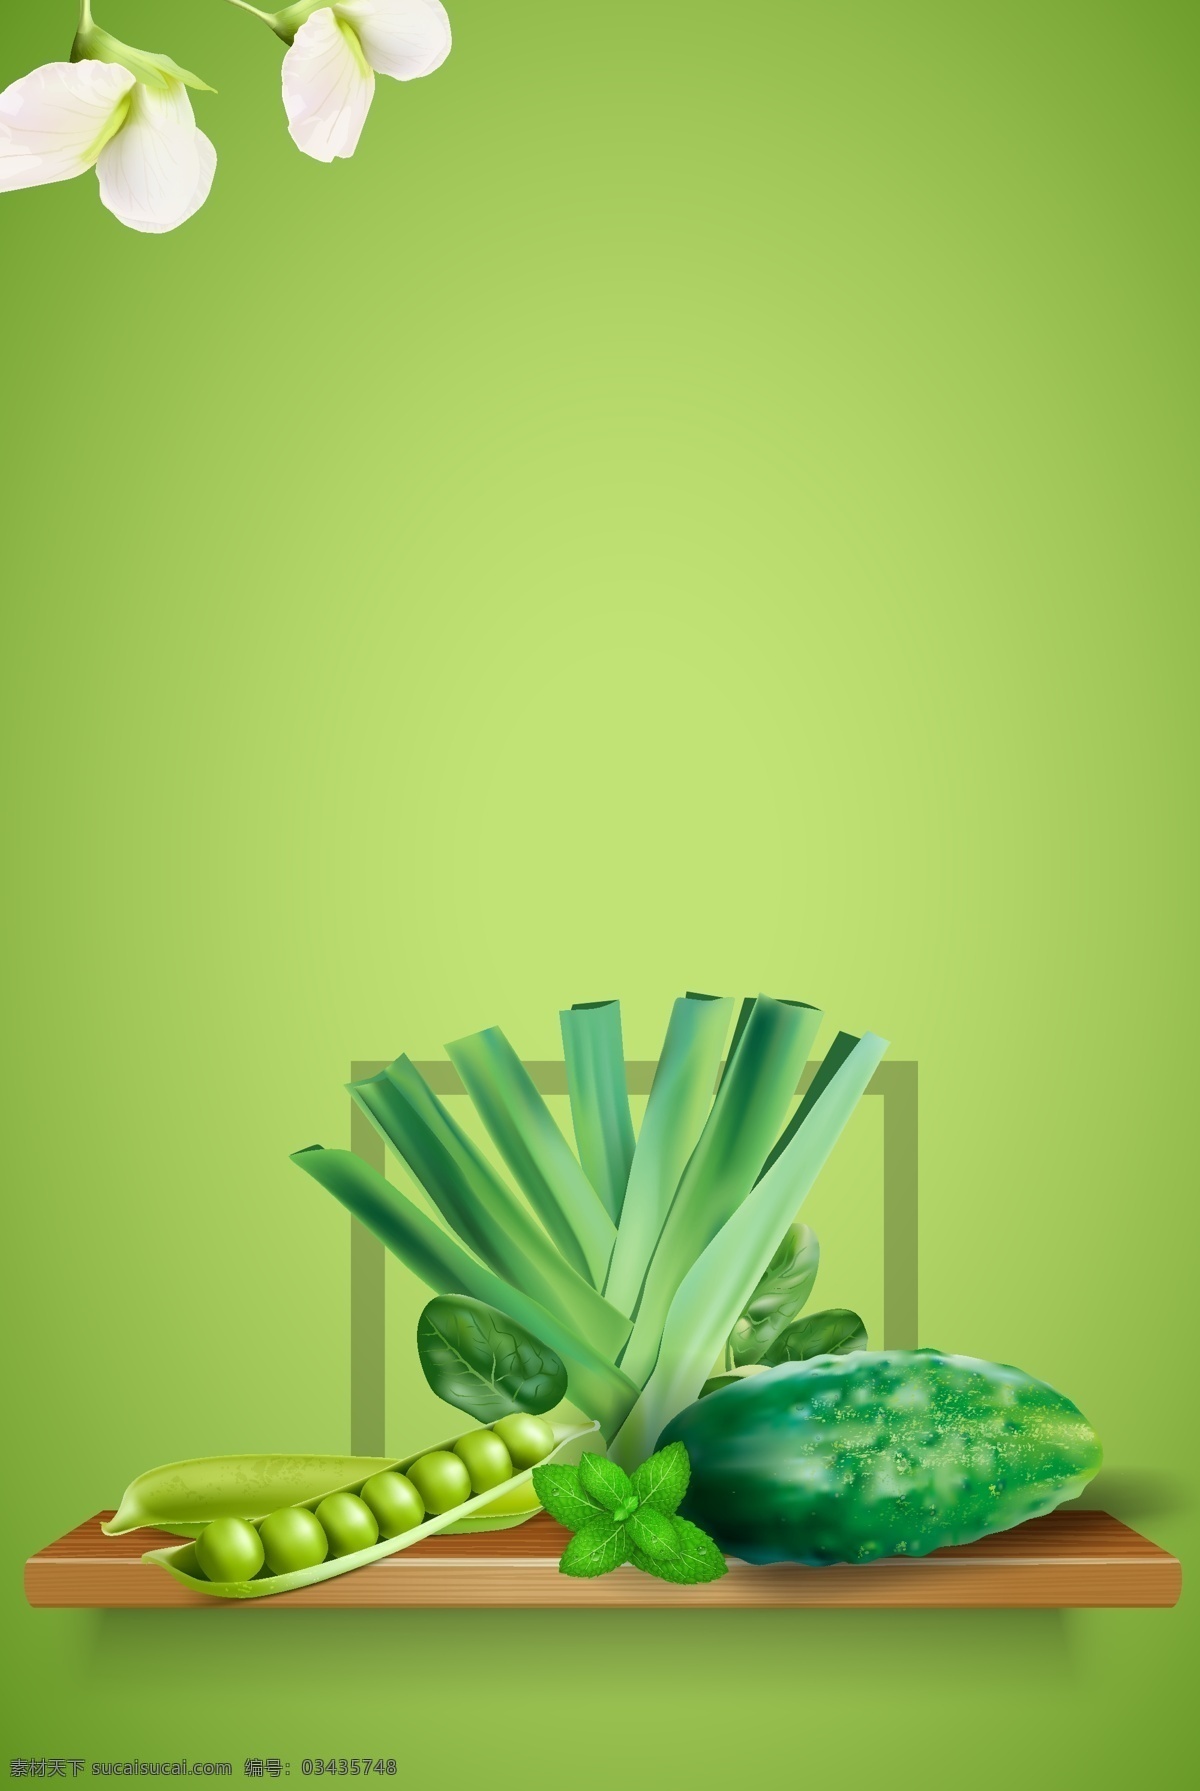 矢量 质感 绿色 蔬菜 绿色食品 背景 新鲜 矢量素材 绿色蔬菜 海报 健康食品 绿色食品背景